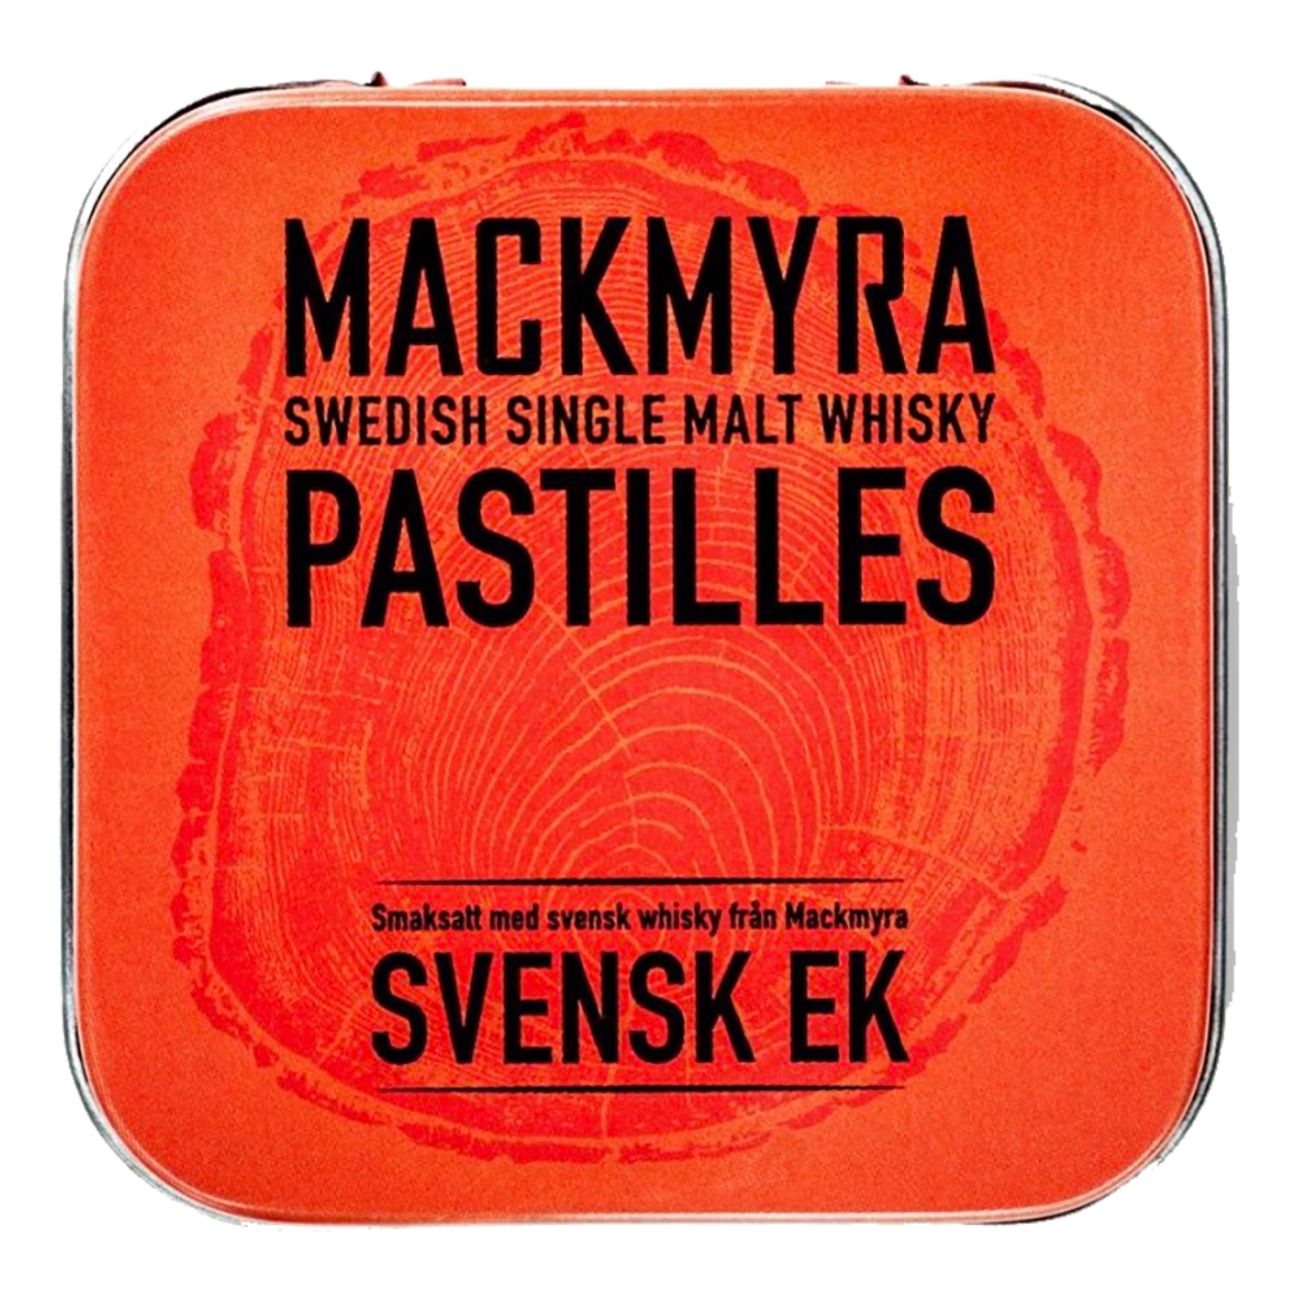 mackmyra-pastiller-svensk-ek-82026-1